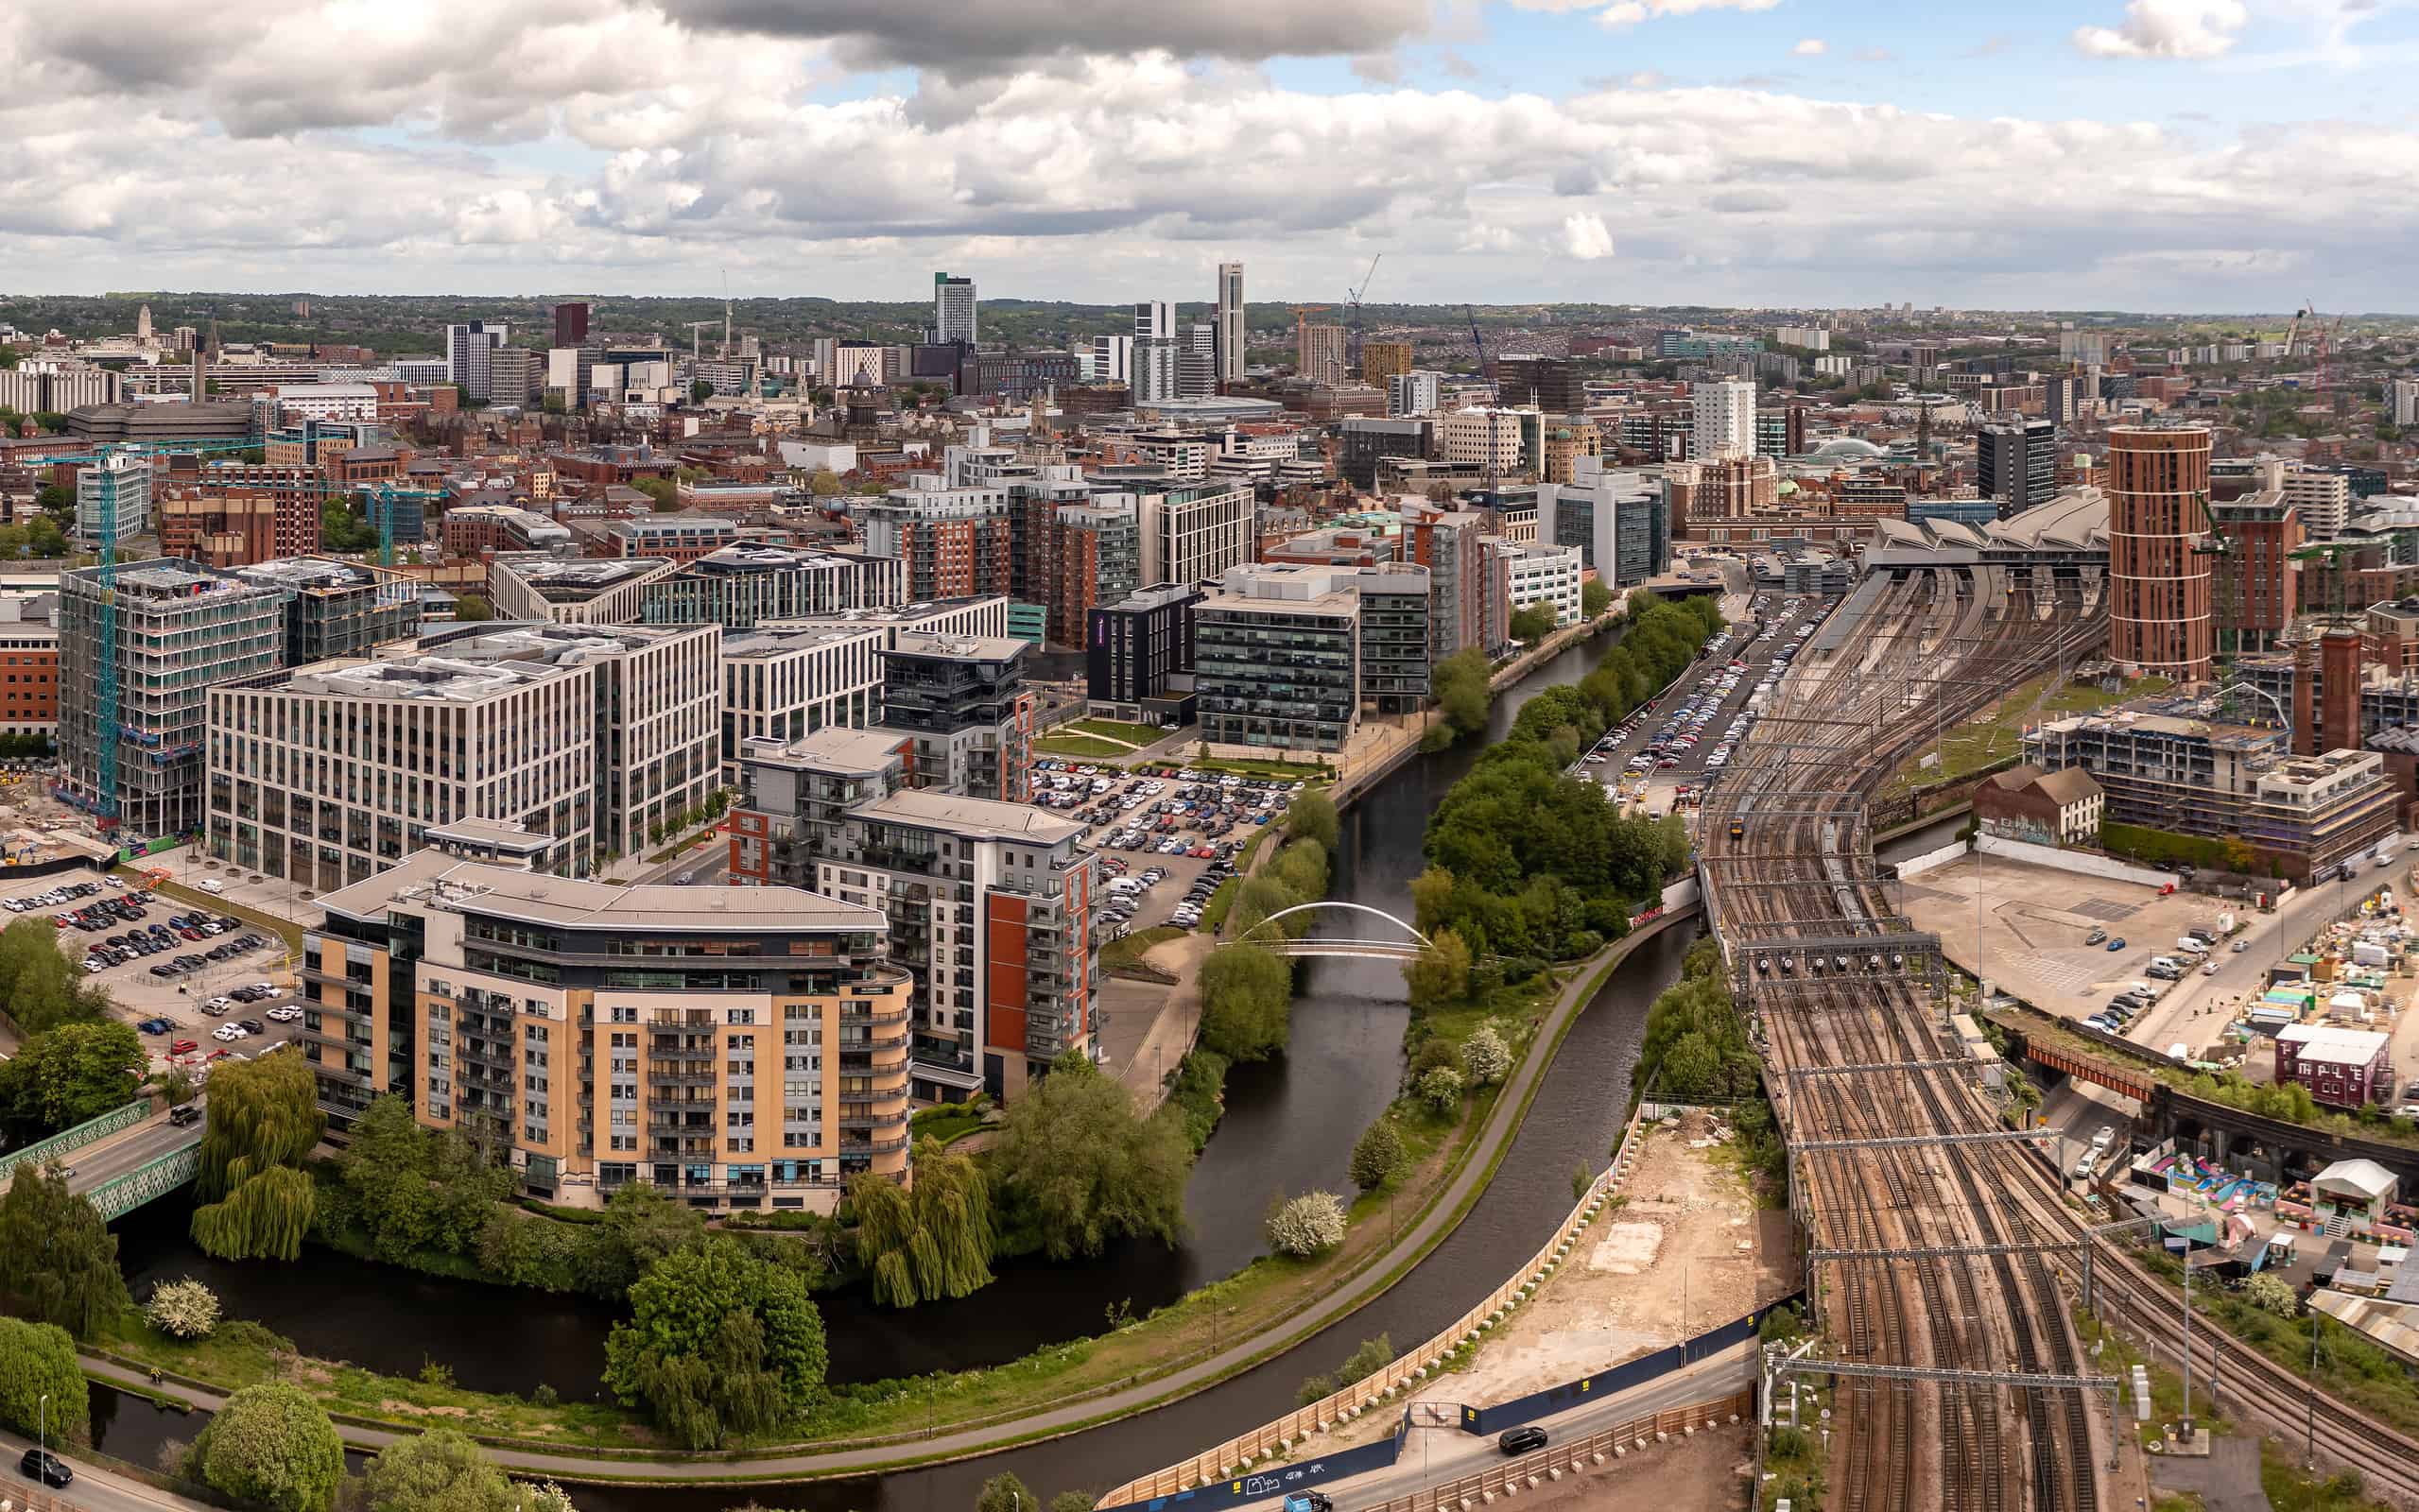 Vista aerea del paesaggio urbano del centro di Leeds e della stazione ferroviaria